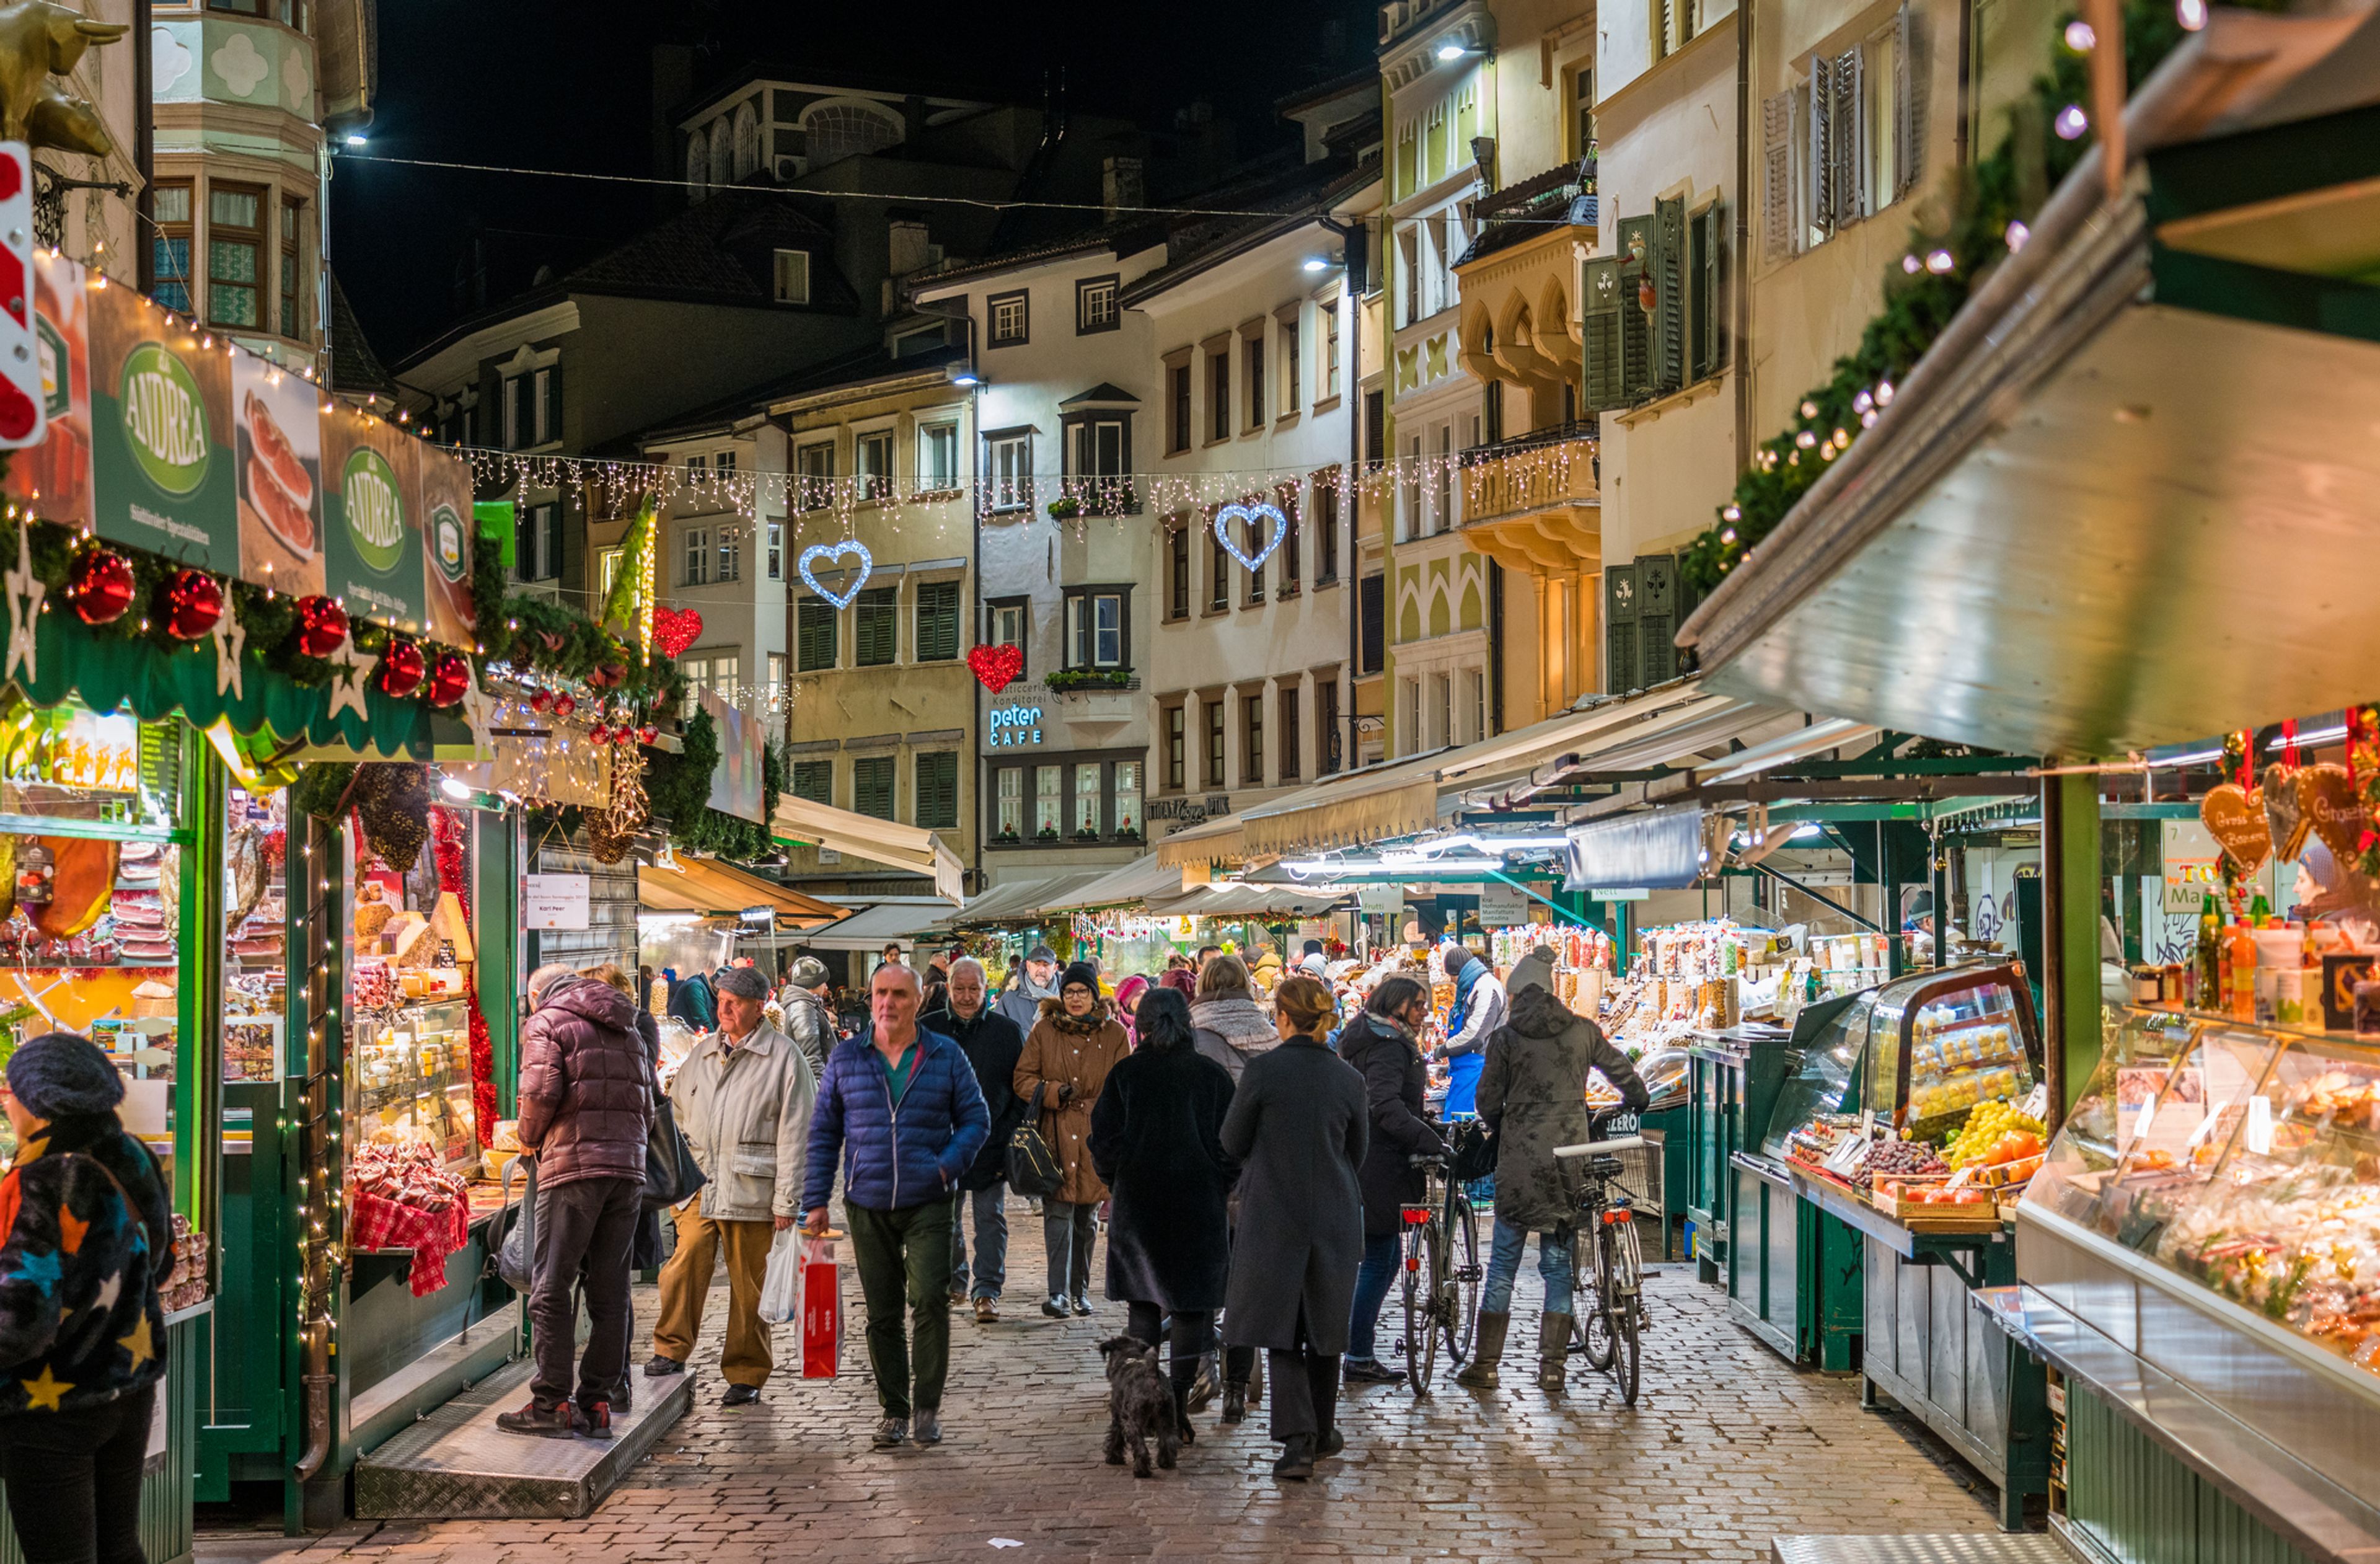 Za vánoční atmosférou: Nejstarší adventní trh v Itálii, který navíc získal ekologickou certifikaci